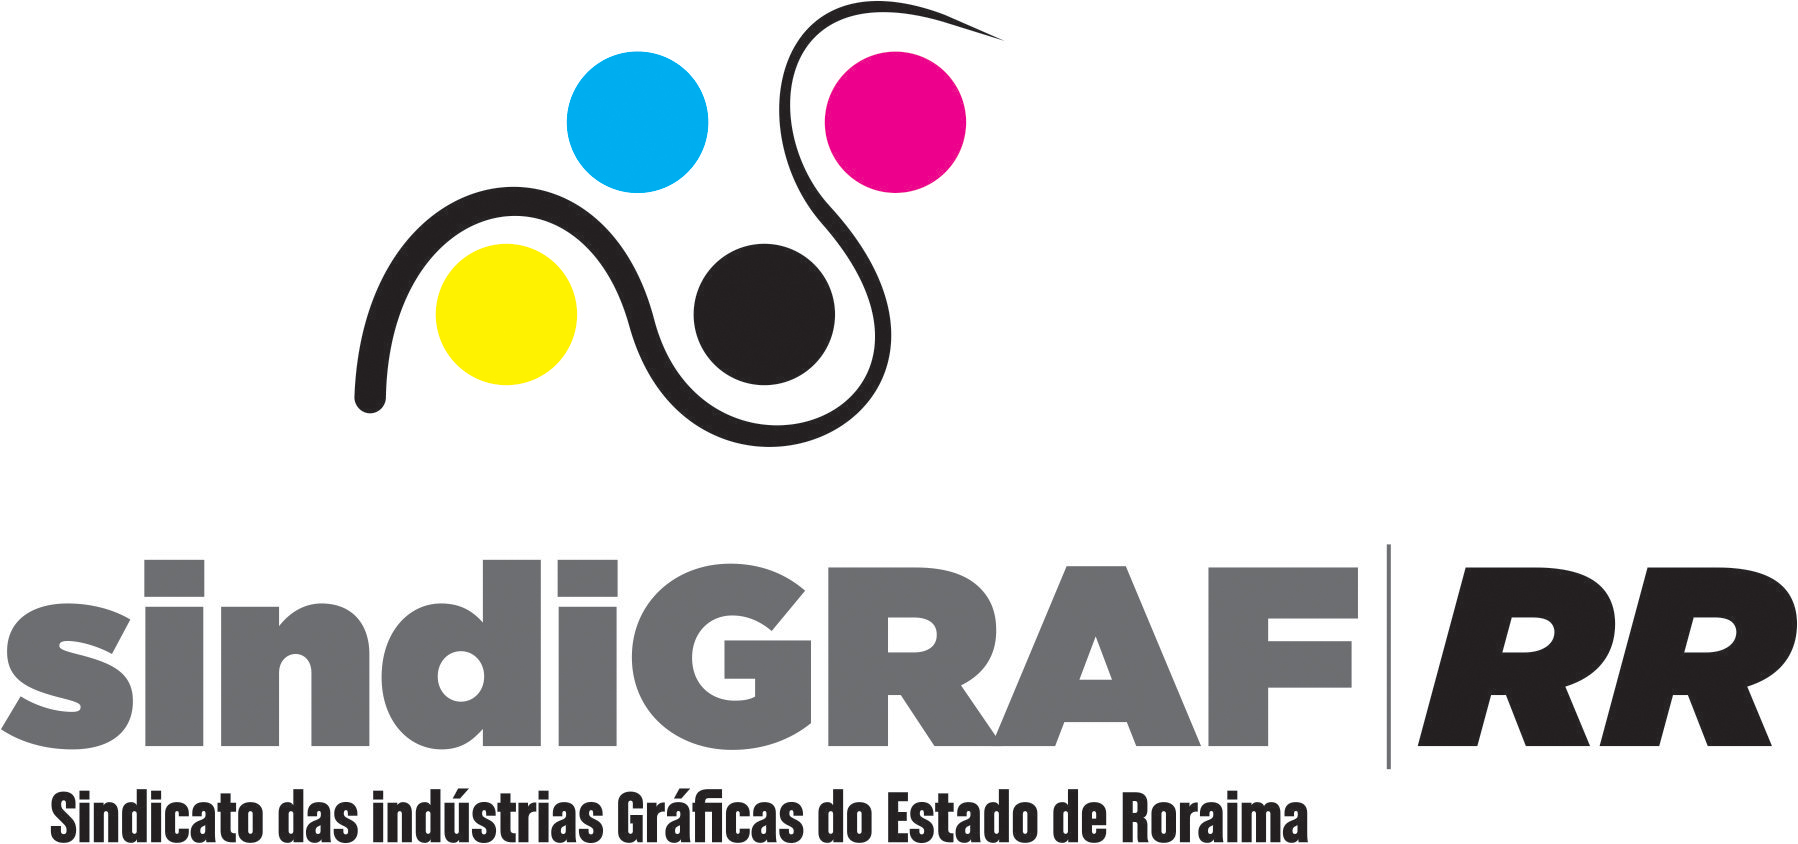 Sindicato das Indústrias Gráficas do Estado de Roraima